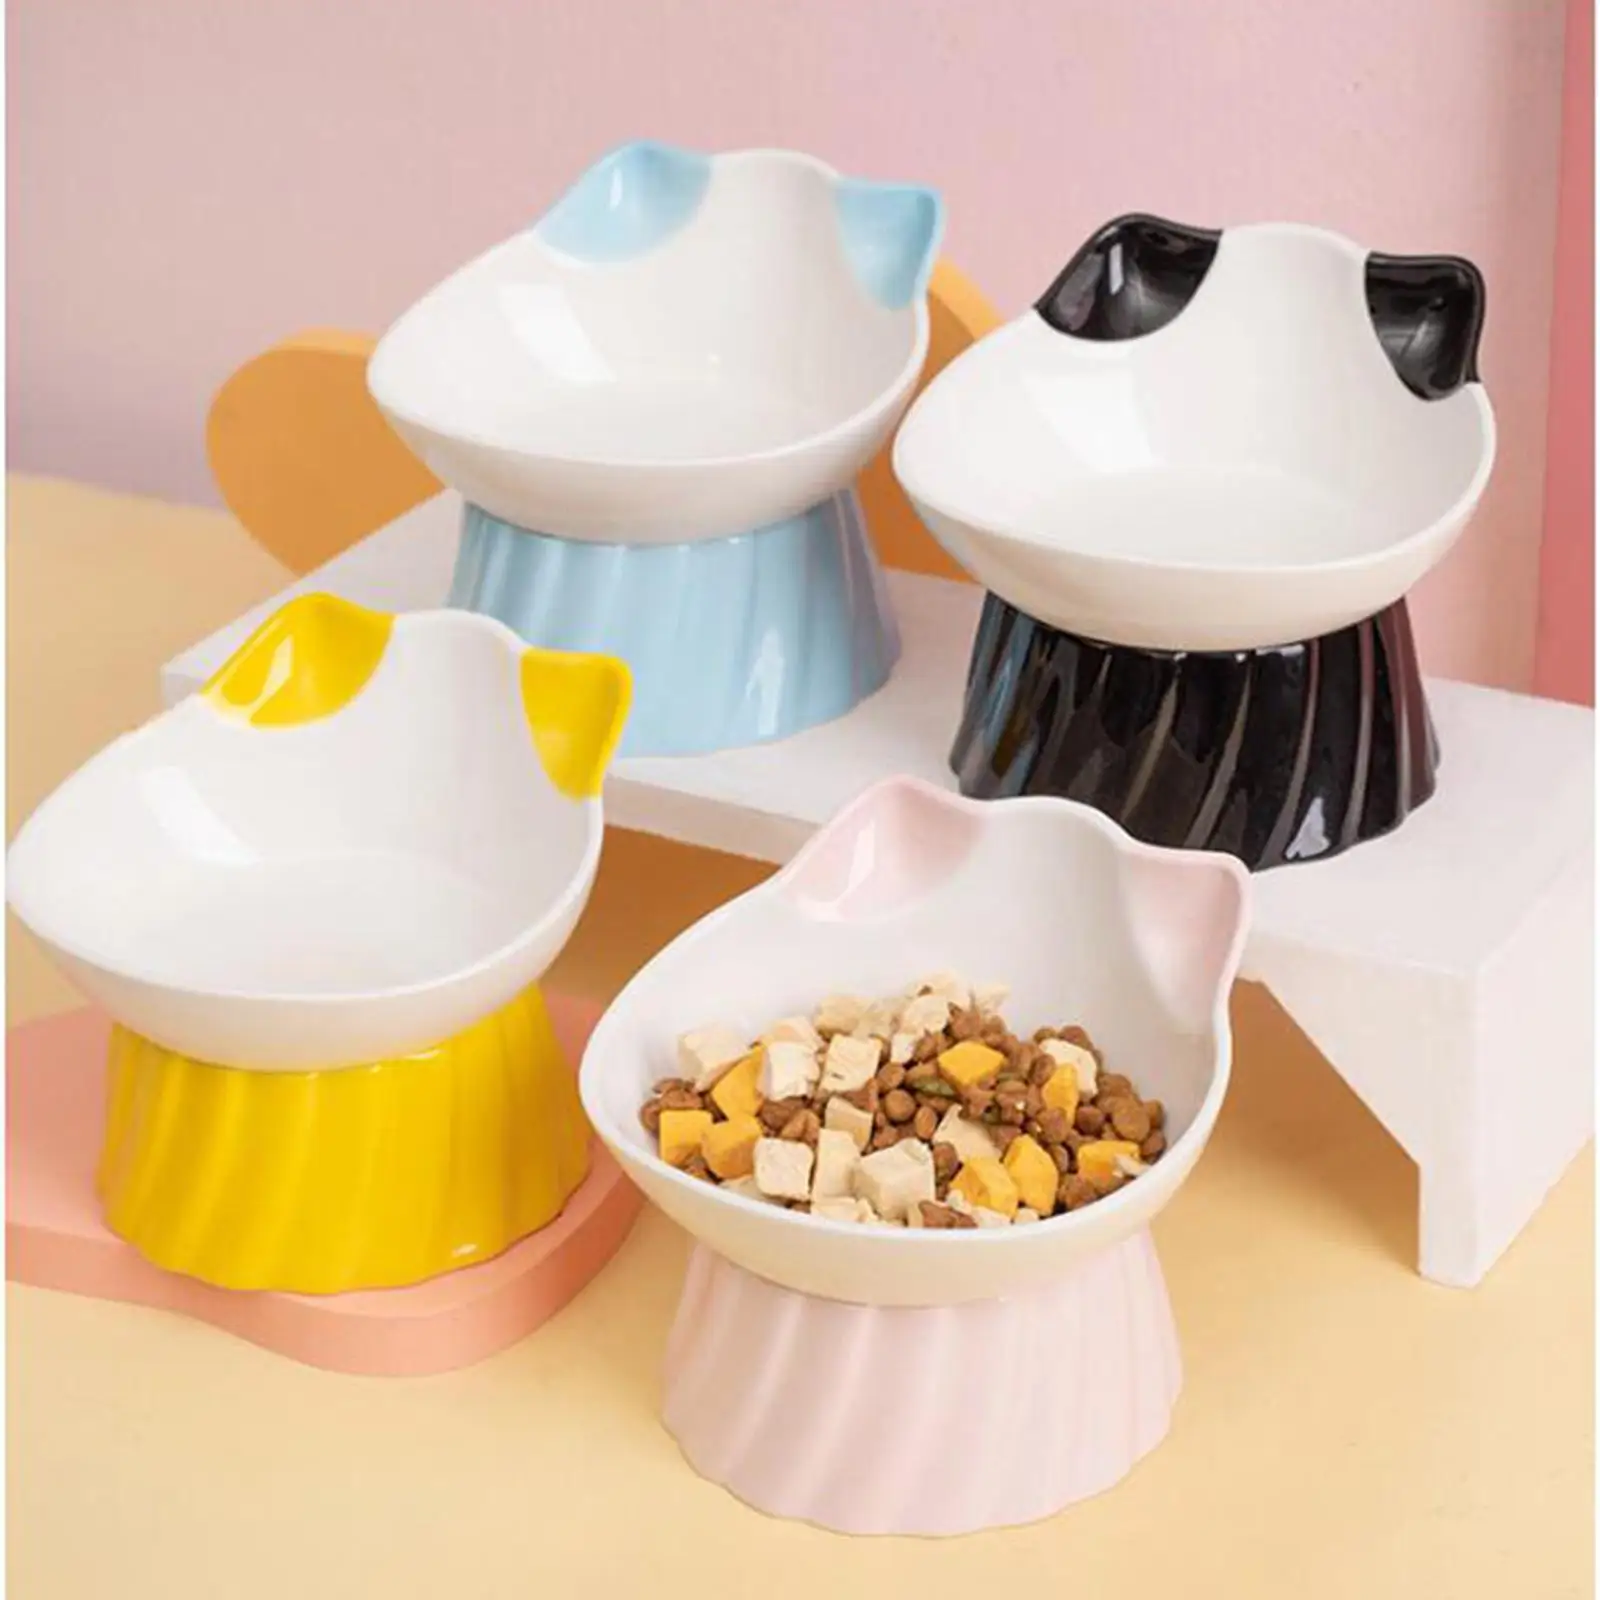 Ceramic Cat Bowl Tilt Stable Large Capacity Non Slip Dispenser Elevated High Foot Raised Cat Dishes Bowls for Kittens Travel